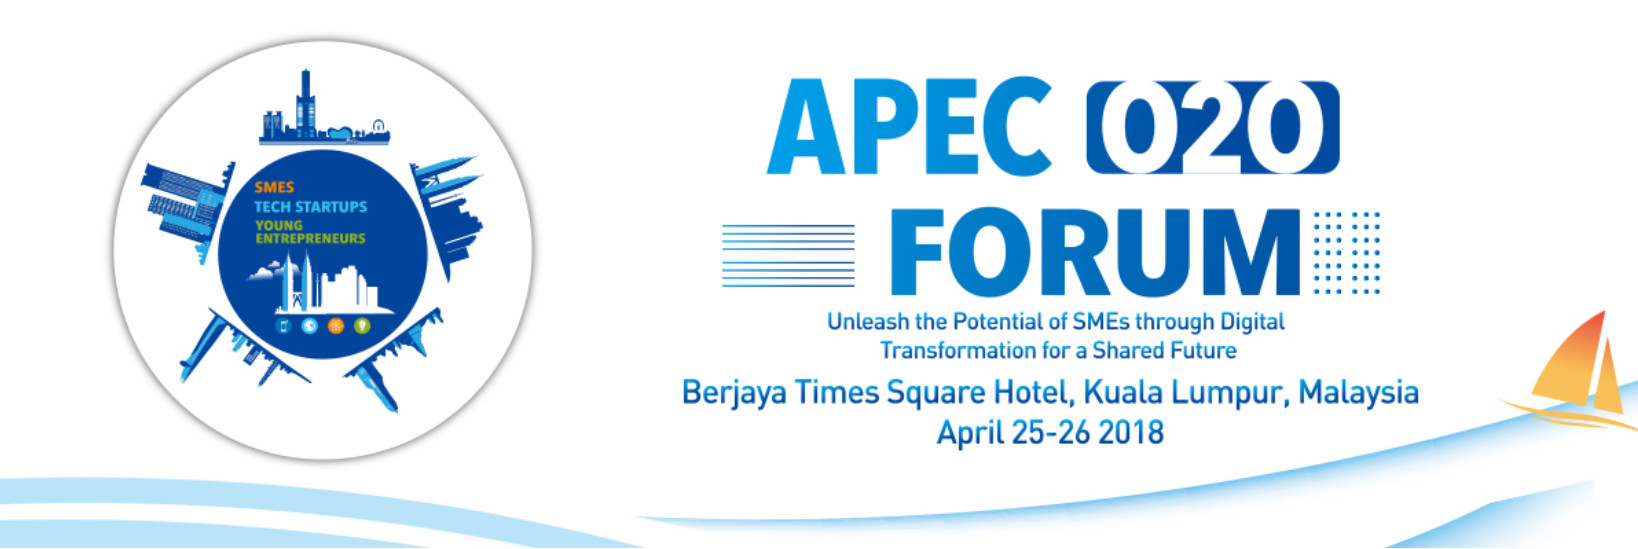 APEC O2O Forum - MALAYSIA 2018